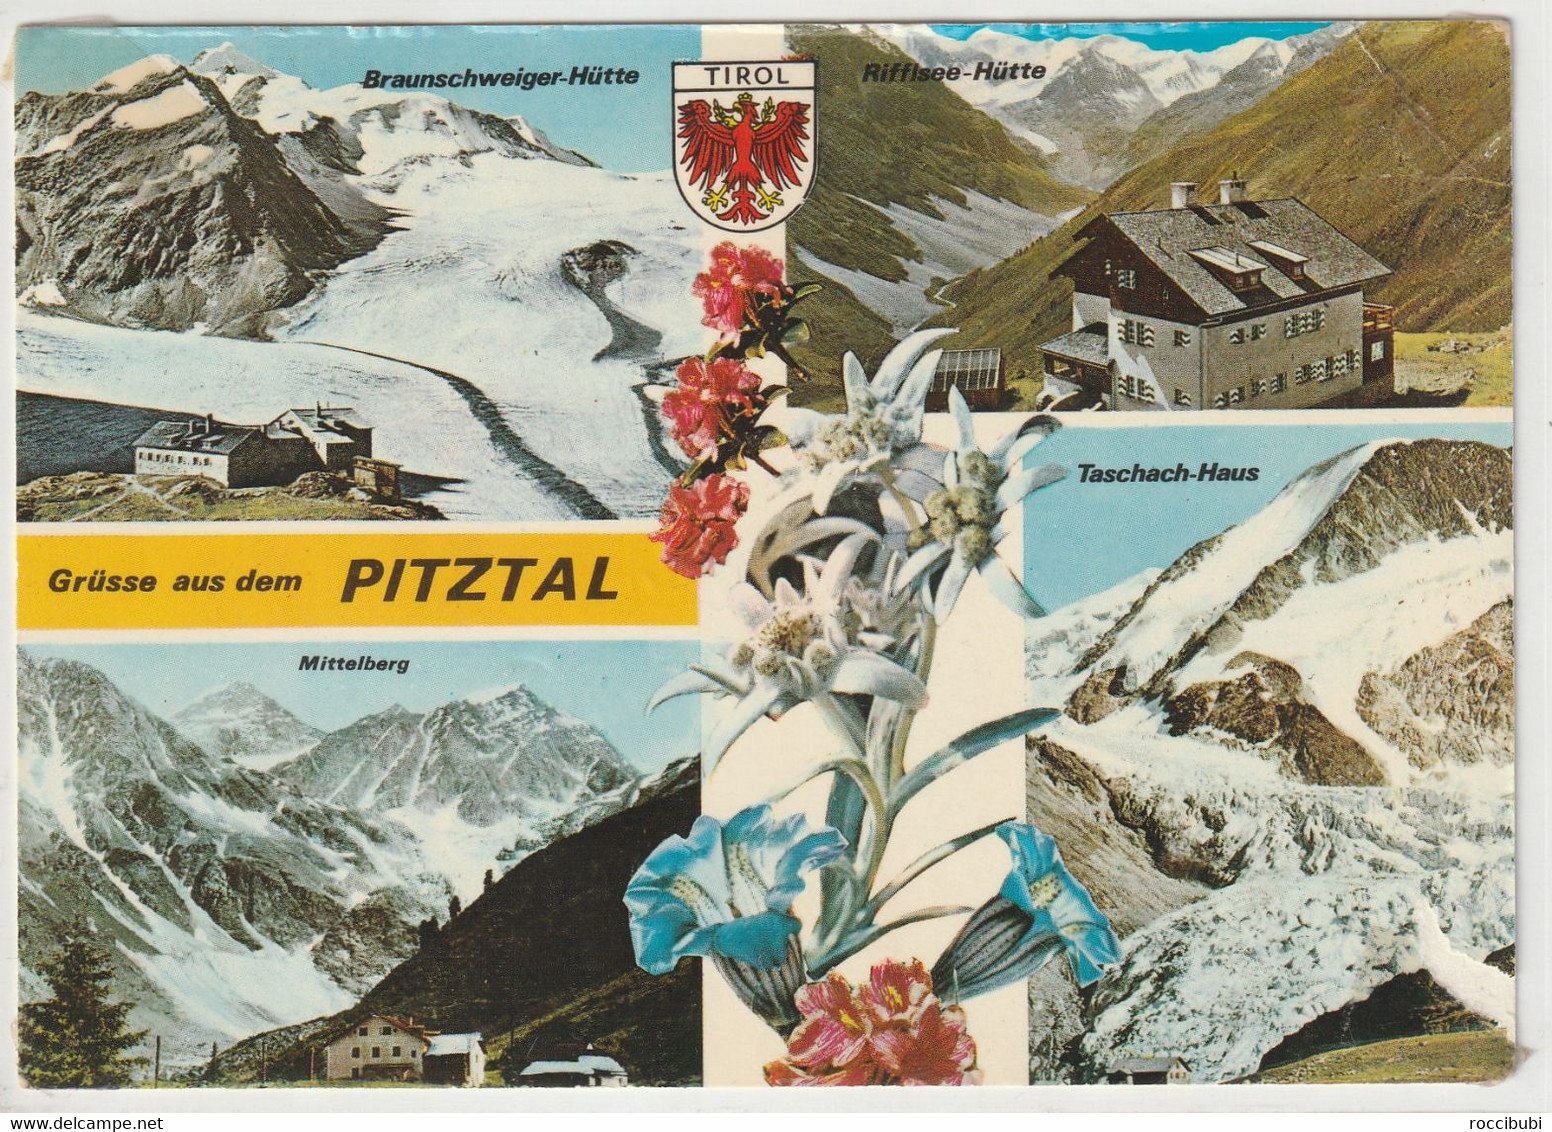 Pitztal, Tirol, Austria - Pitztal